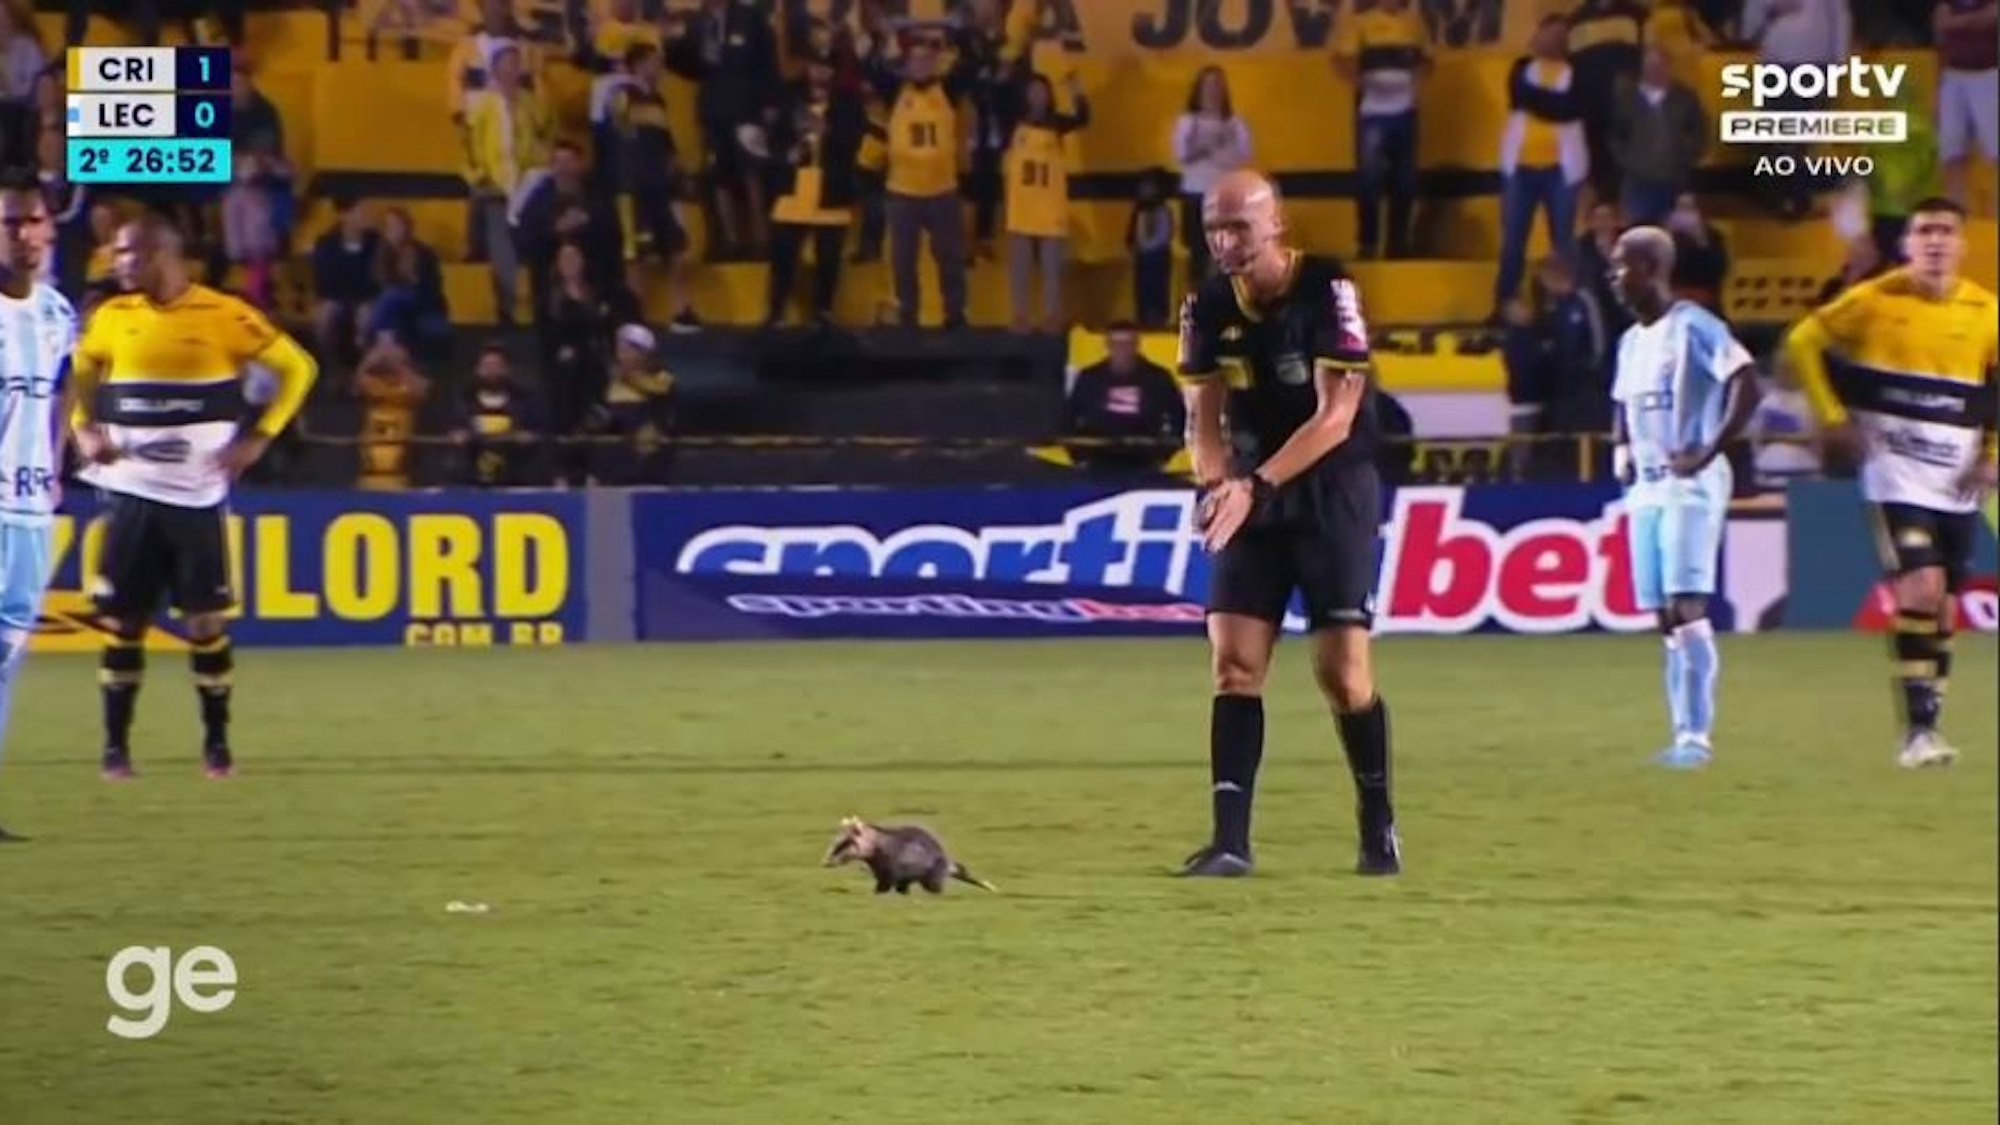 Ein Opossum flitzt beim Zweitliga-Spiel zwischen Criciúma und Londrina über den Rasen und wird vom Schiedsrichter und einigen Spielern vom Feld getrieben.